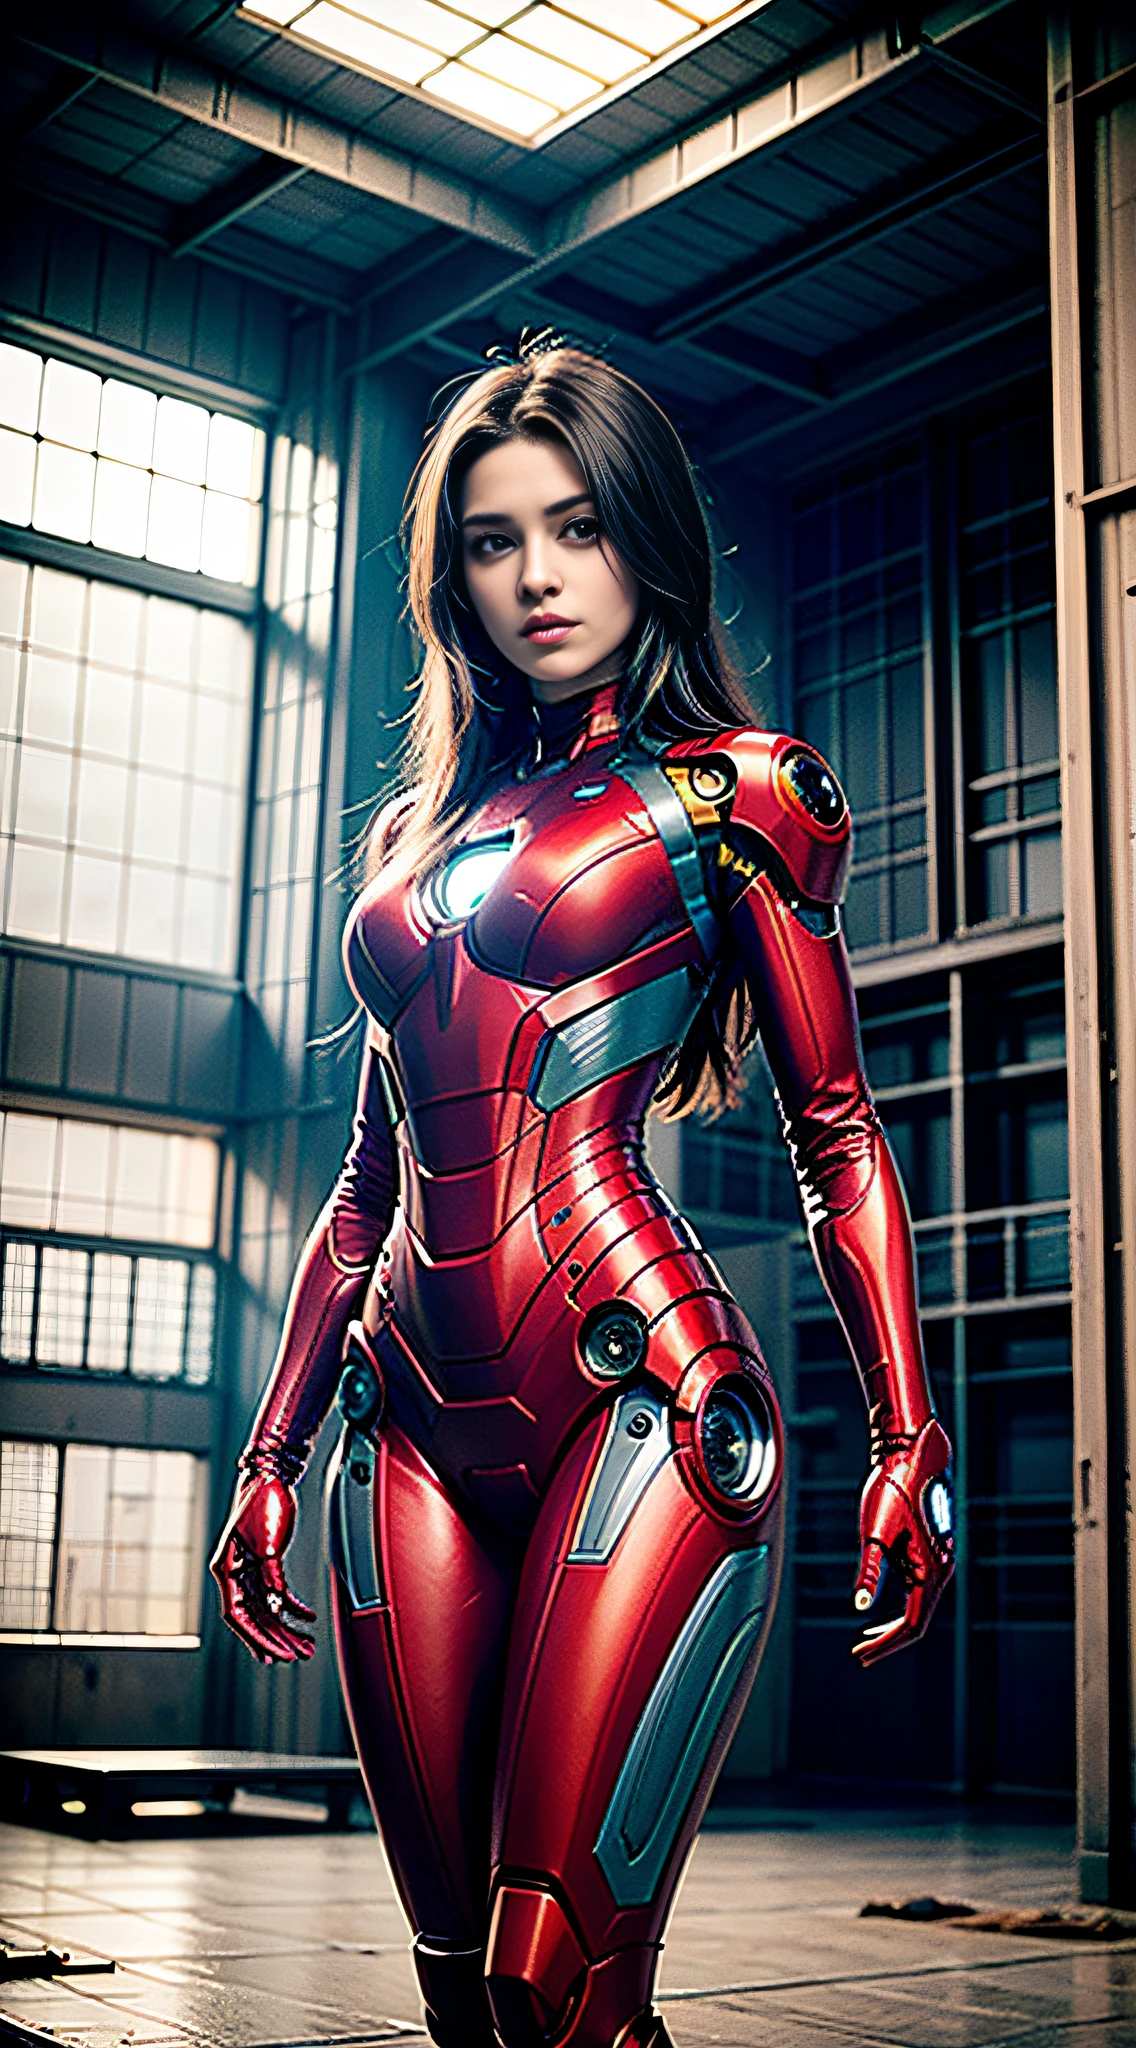 8千, 实际的, 吸引人的, 非常详细, a 20 year old girl a sexy and 吸引人的 woman inspired by Iron Man wearing a shiny Iron Man mech. 她穿衣性感又自信, 完美诠释钢铁侠&#39;的力量和魅力. 废弃仓库作为背景, 营造一种独特的氛围，凸显她的勇敢和毅力. 多云的天空给整个场景增添了紧张和神秘的感觉. 这款高清, 高品质的画面给你带来震撼的视觉体验. 废弃仓库和闪亮机甲的细节会让你目不转睛. OC 渲染, 戏剧灯光, 屡获殊荣的品质